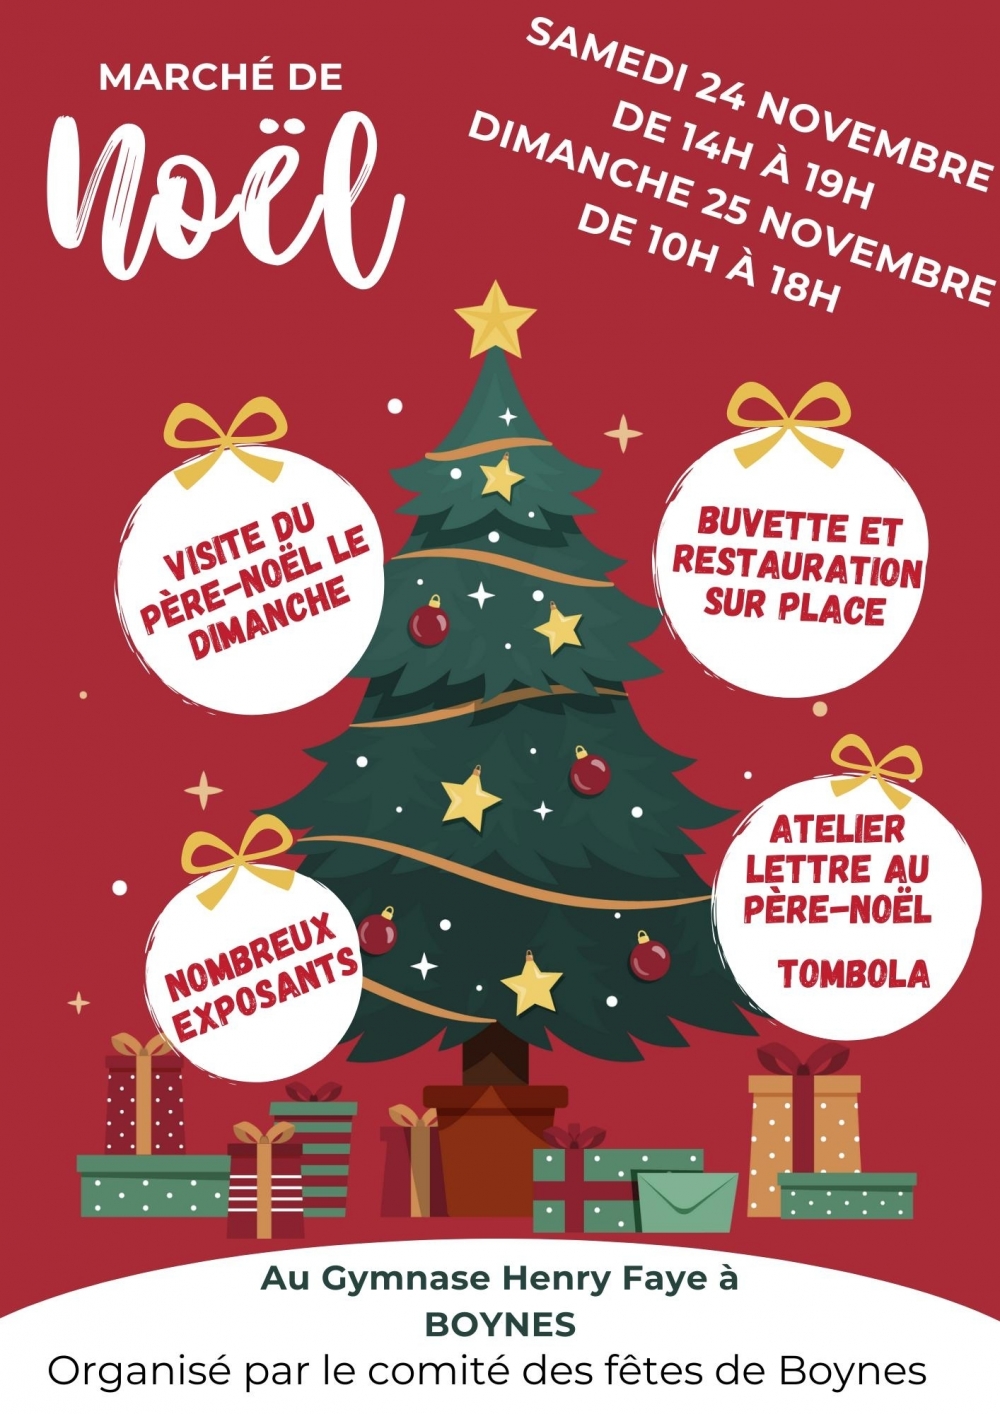 Marché de Noël - Commune de Boynes